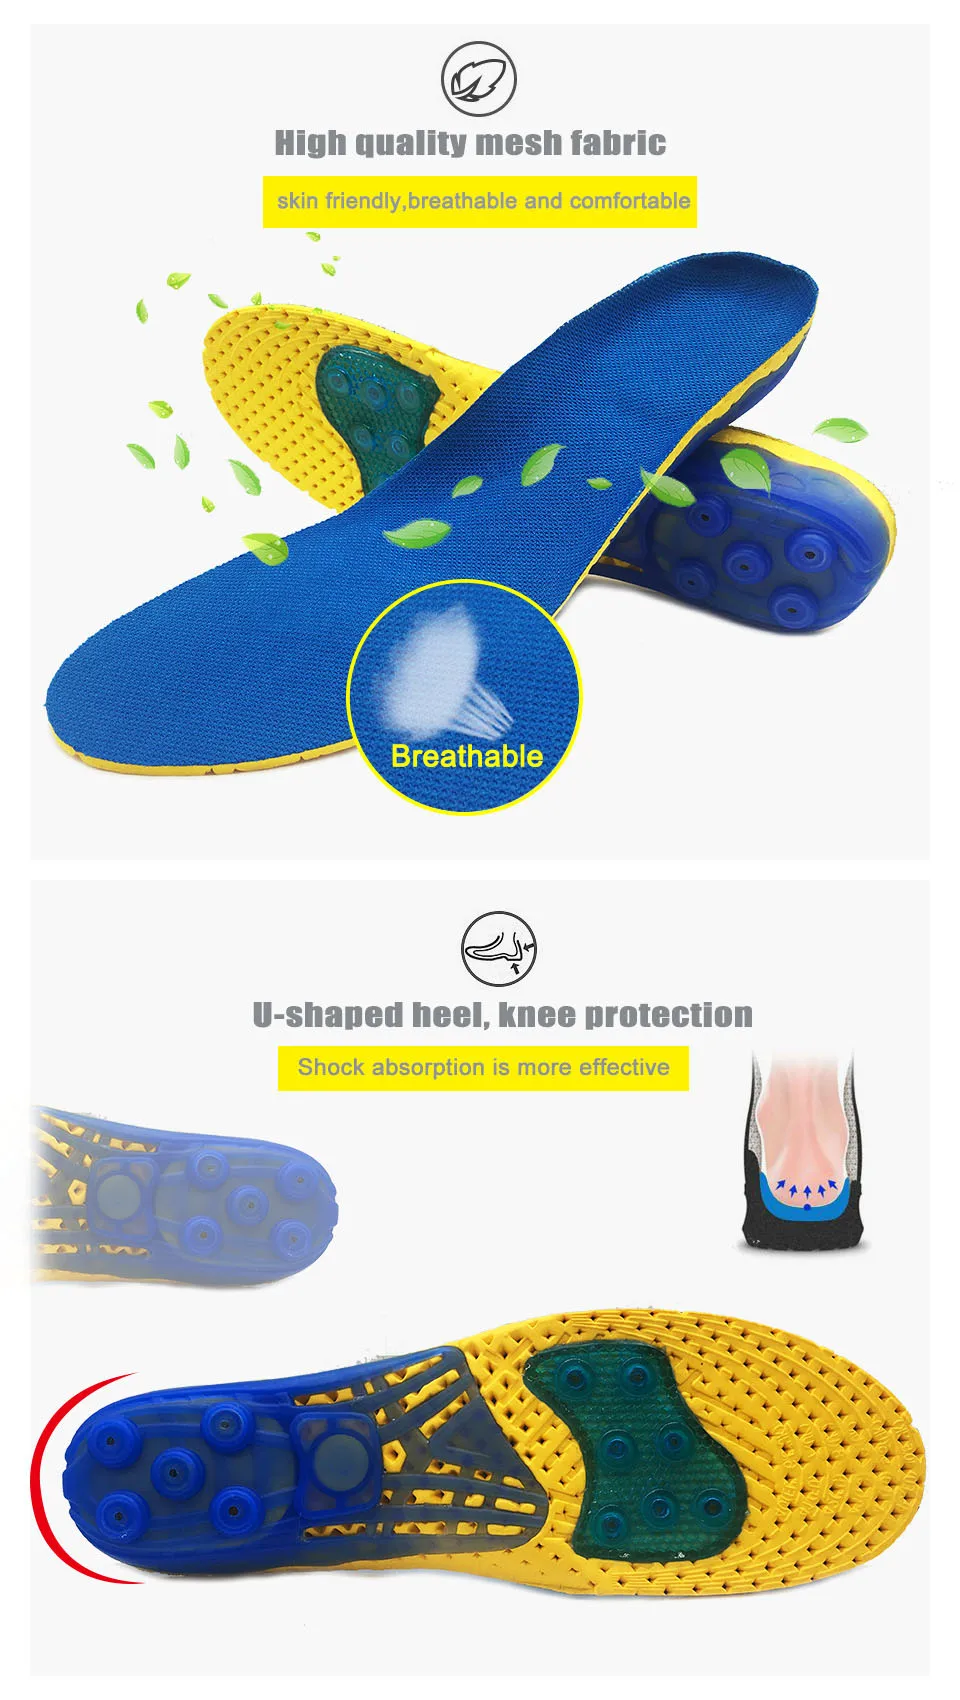 Унисекс стельки для обуви супер амортизационные весенние спортивные стельки облегчение боли в ногах стелька для обуви для мужчин и женщин